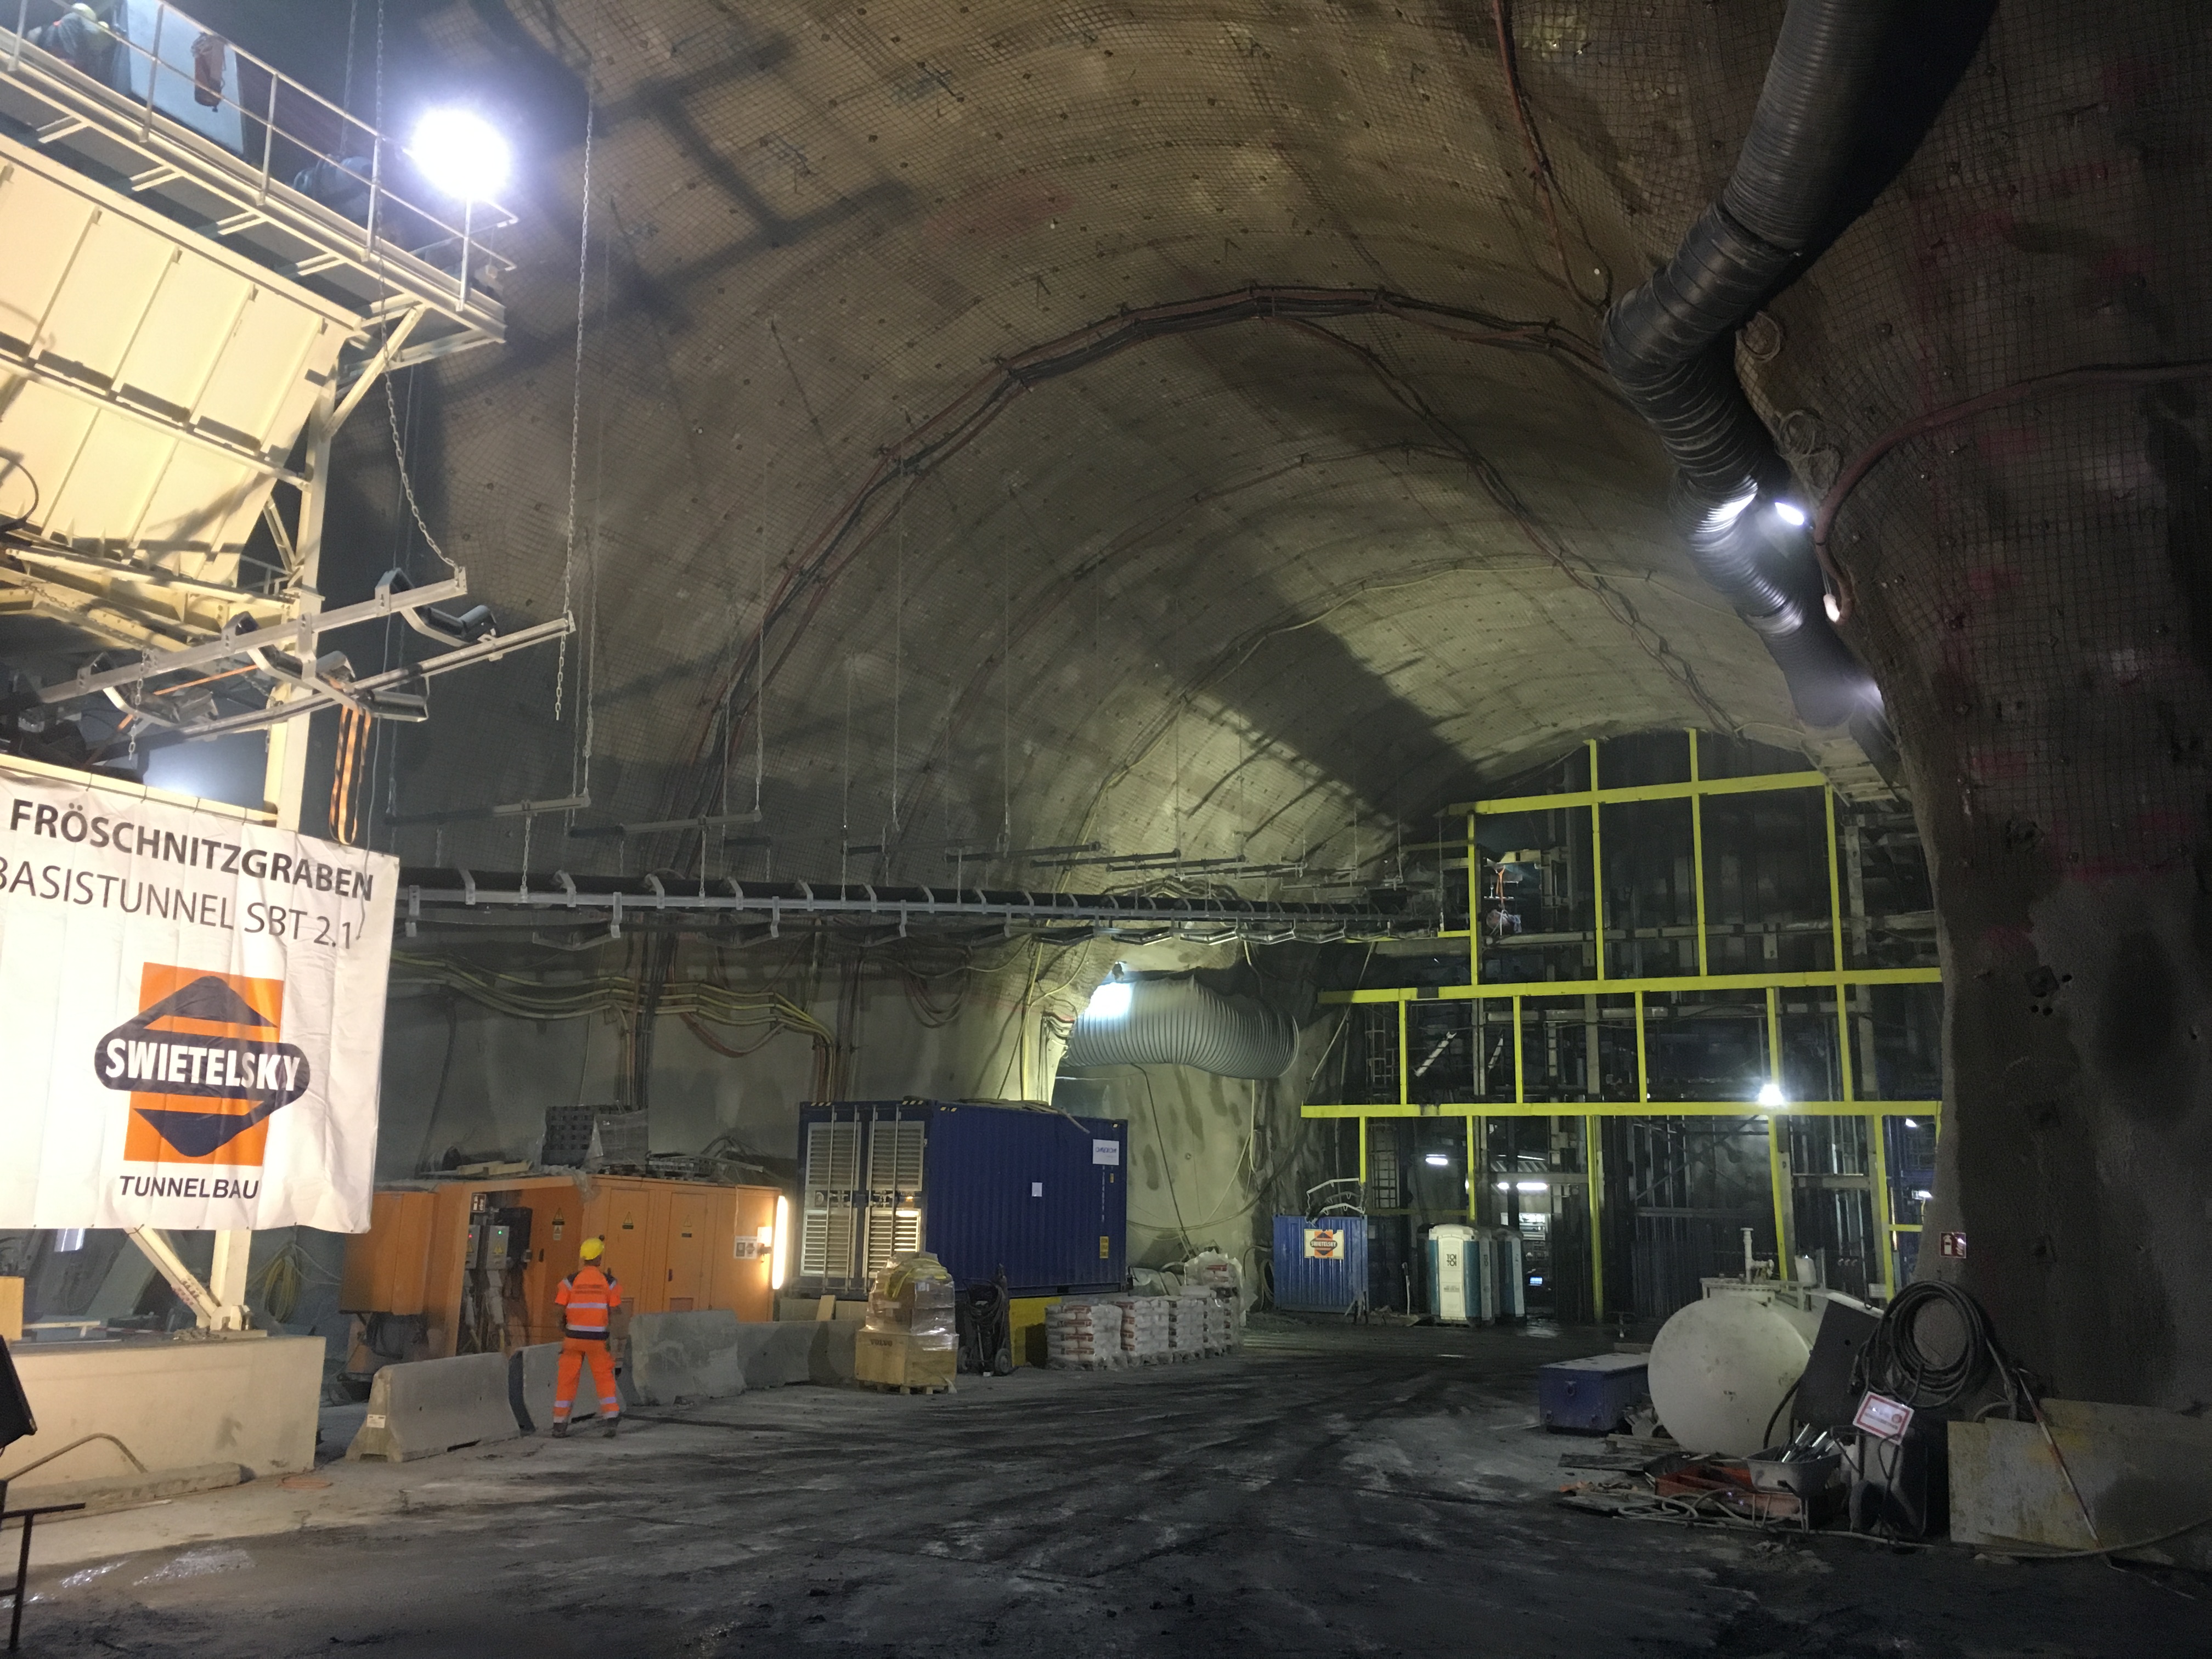 Semmering Basistunnel - SBT 2.1 Fröschnitzgraben - Tunnel construction